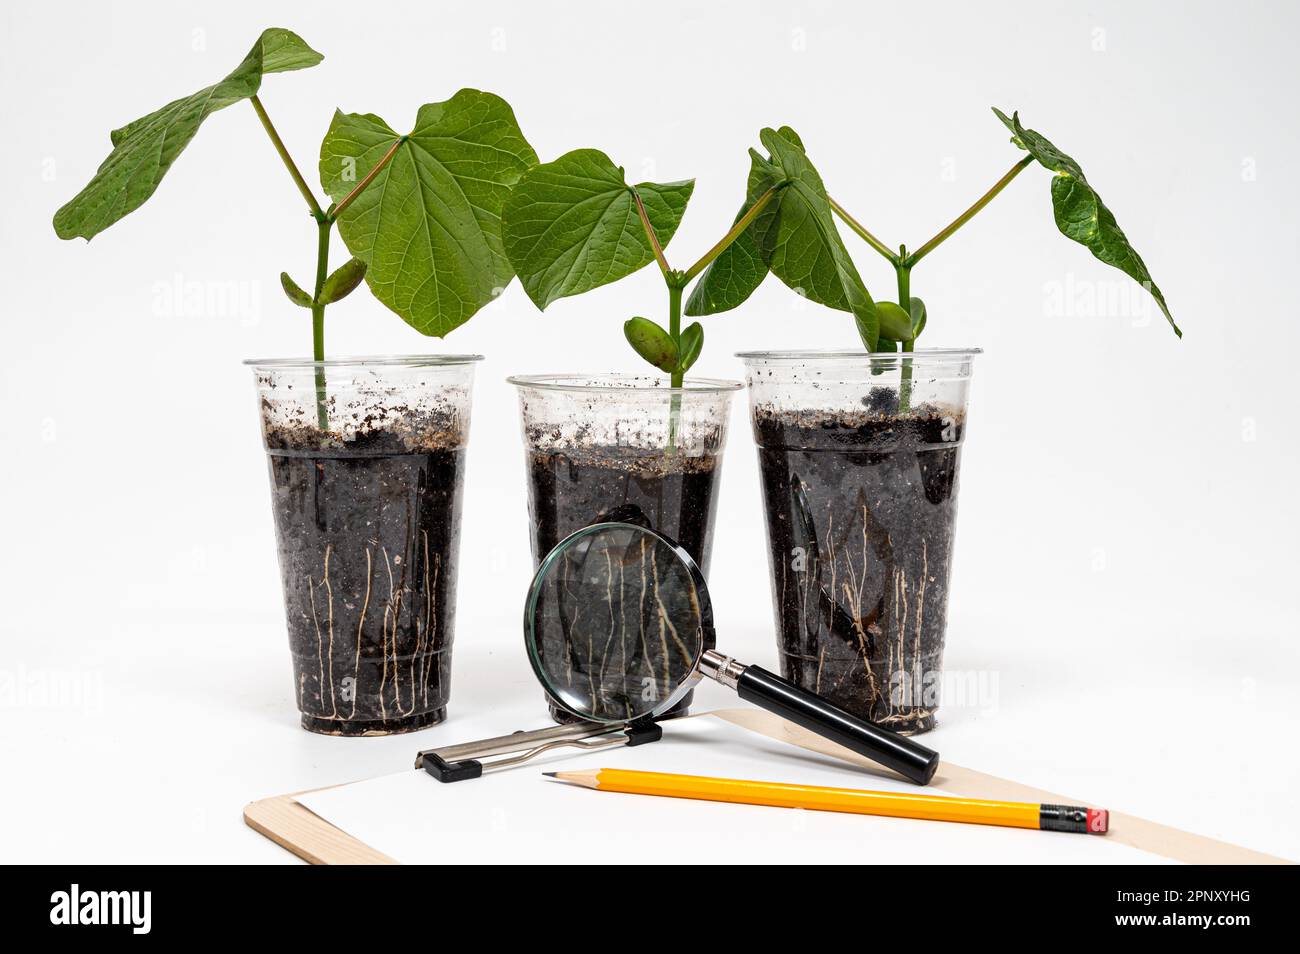 Una tazza riciclata di plastica con cotiledone di fagiolo di spada in crescita, una matita e una lente d'ingrandimento su una clipboard Foto Stock